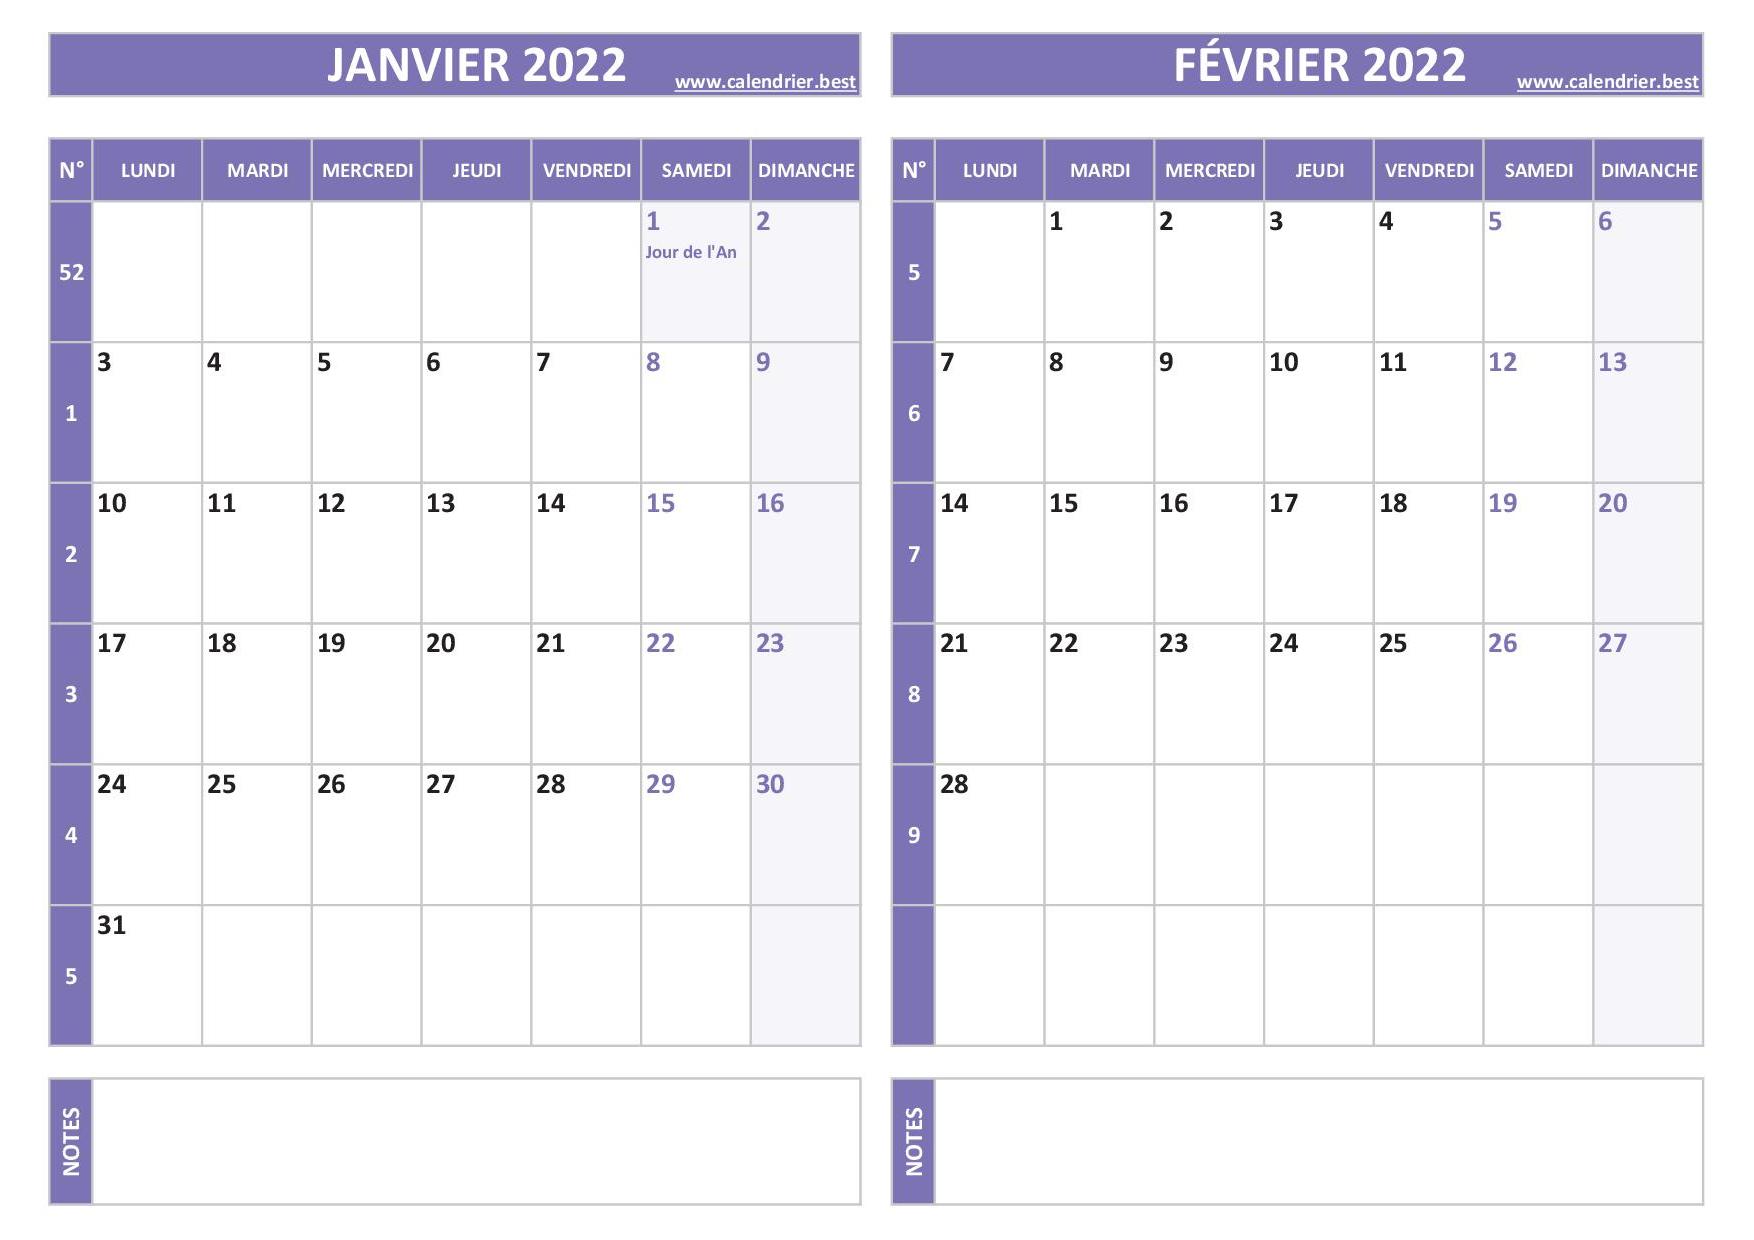 Calendrier janvier février 2022.